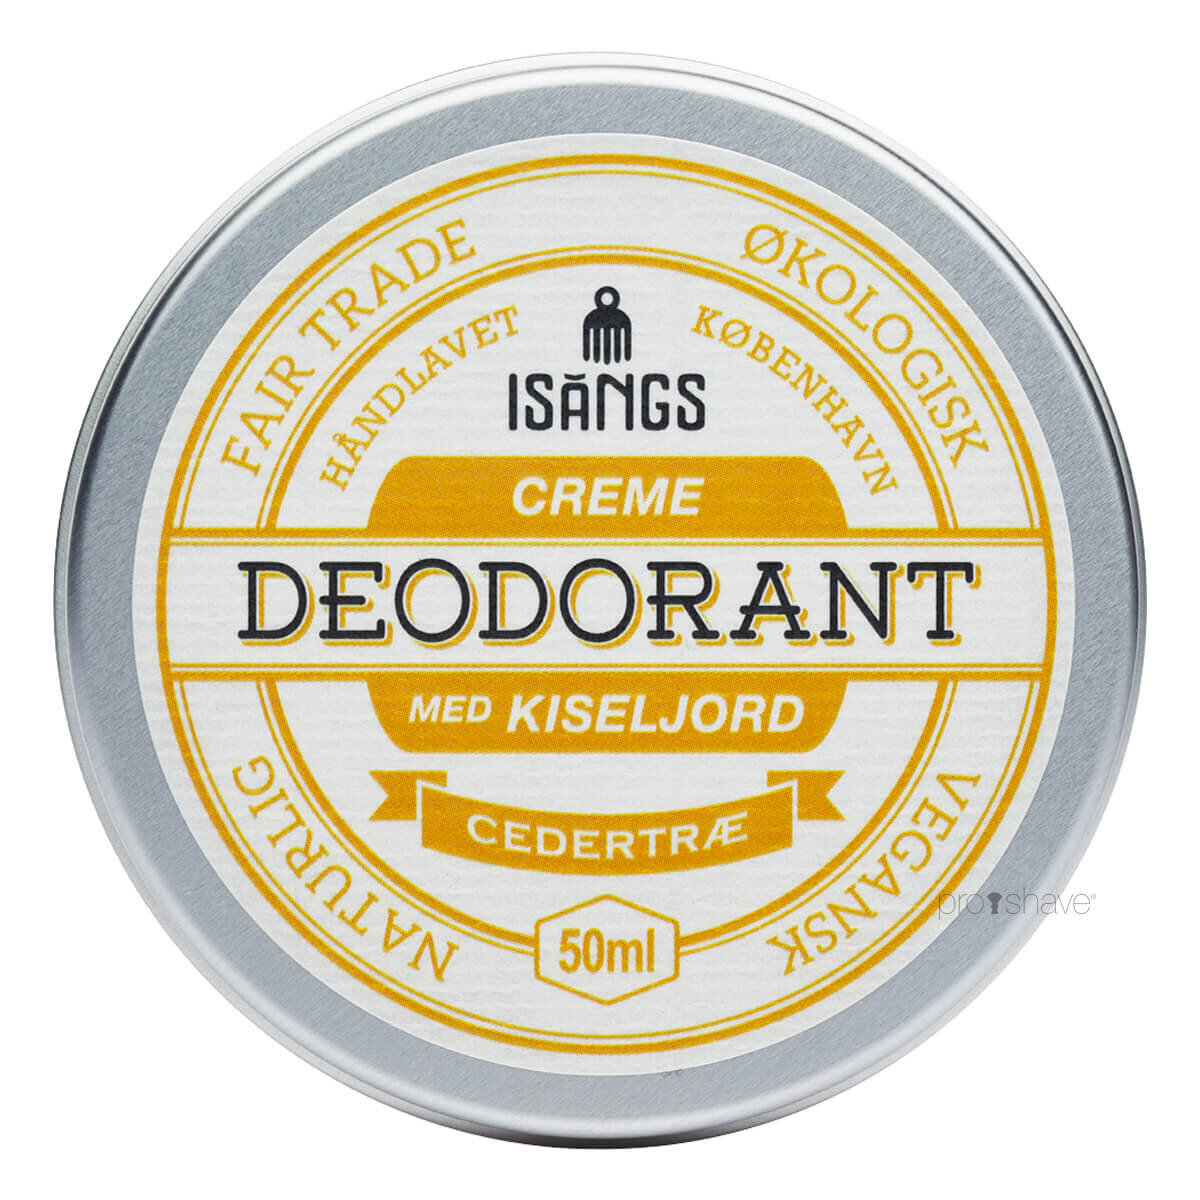 Se Isangs - Creme Deodorant Med Kiseljord - Cedertræ hos Proshave